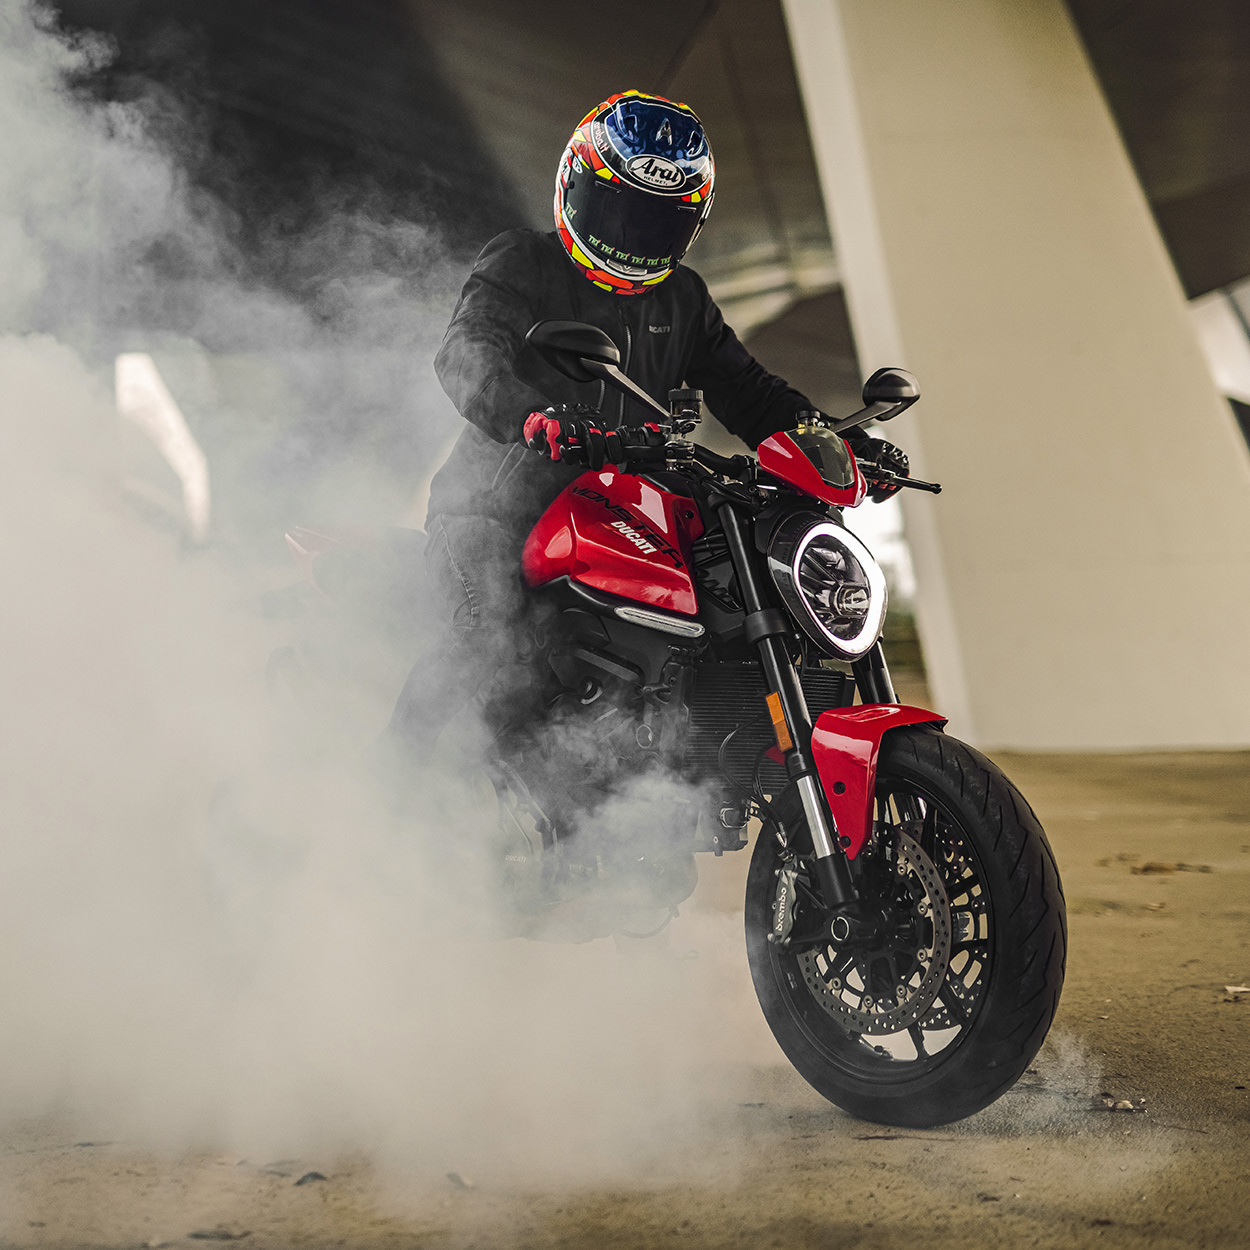 The new Ducati Monster